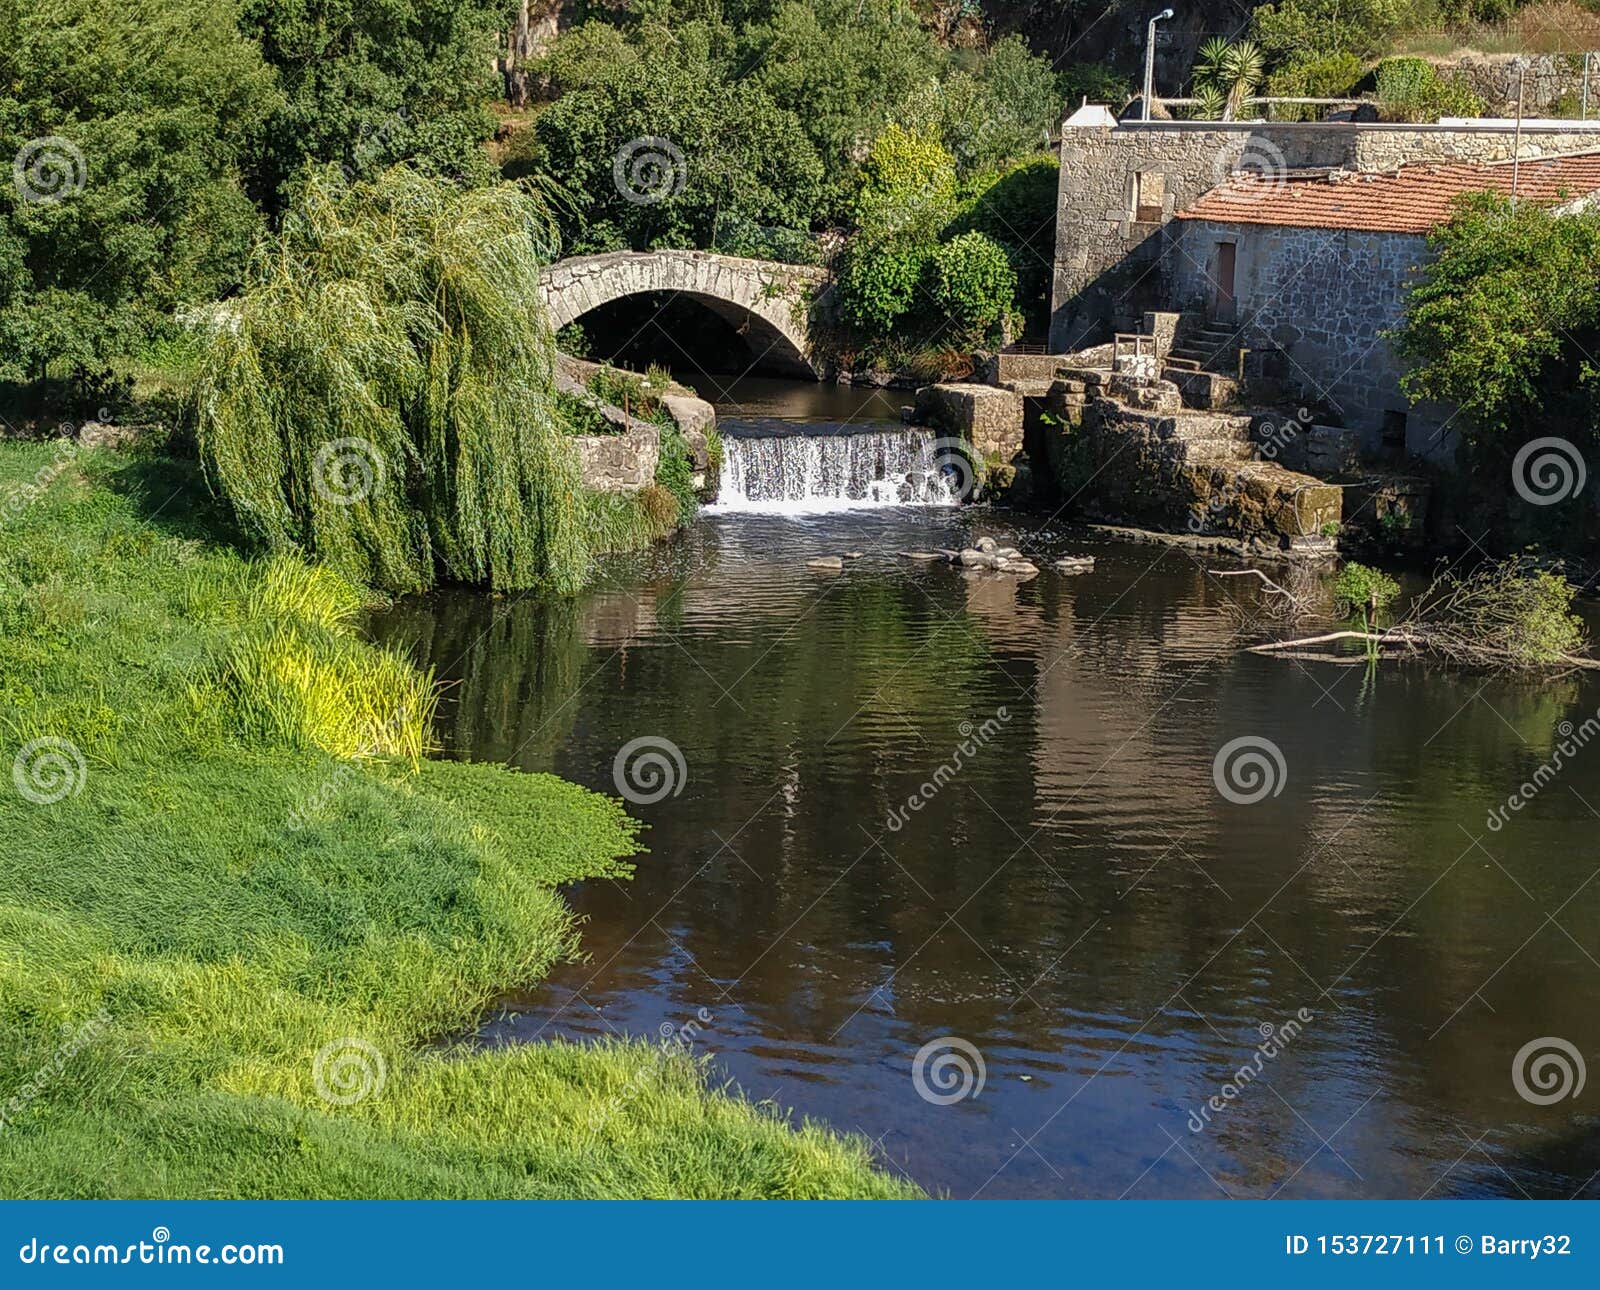 old roman stone bridge and waterfall on este river in vila do conde, portugal